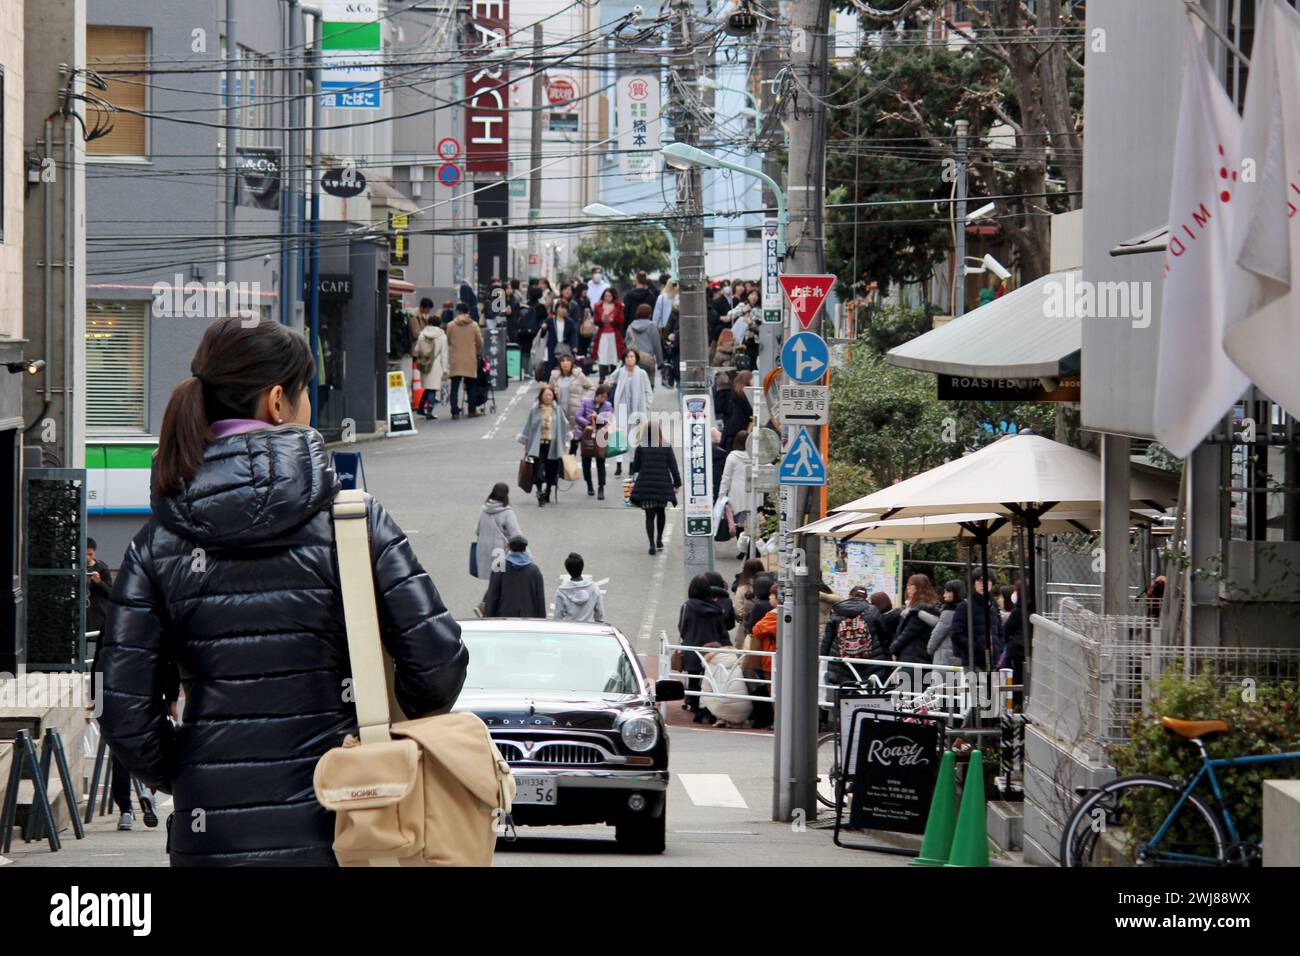 Das tägliche Leben in Japan Landschaft einer Seitenstraße in Shibuya während eines Urlaubs, voll mit Menschen, die ihre Freizeit genießen Stockfoto